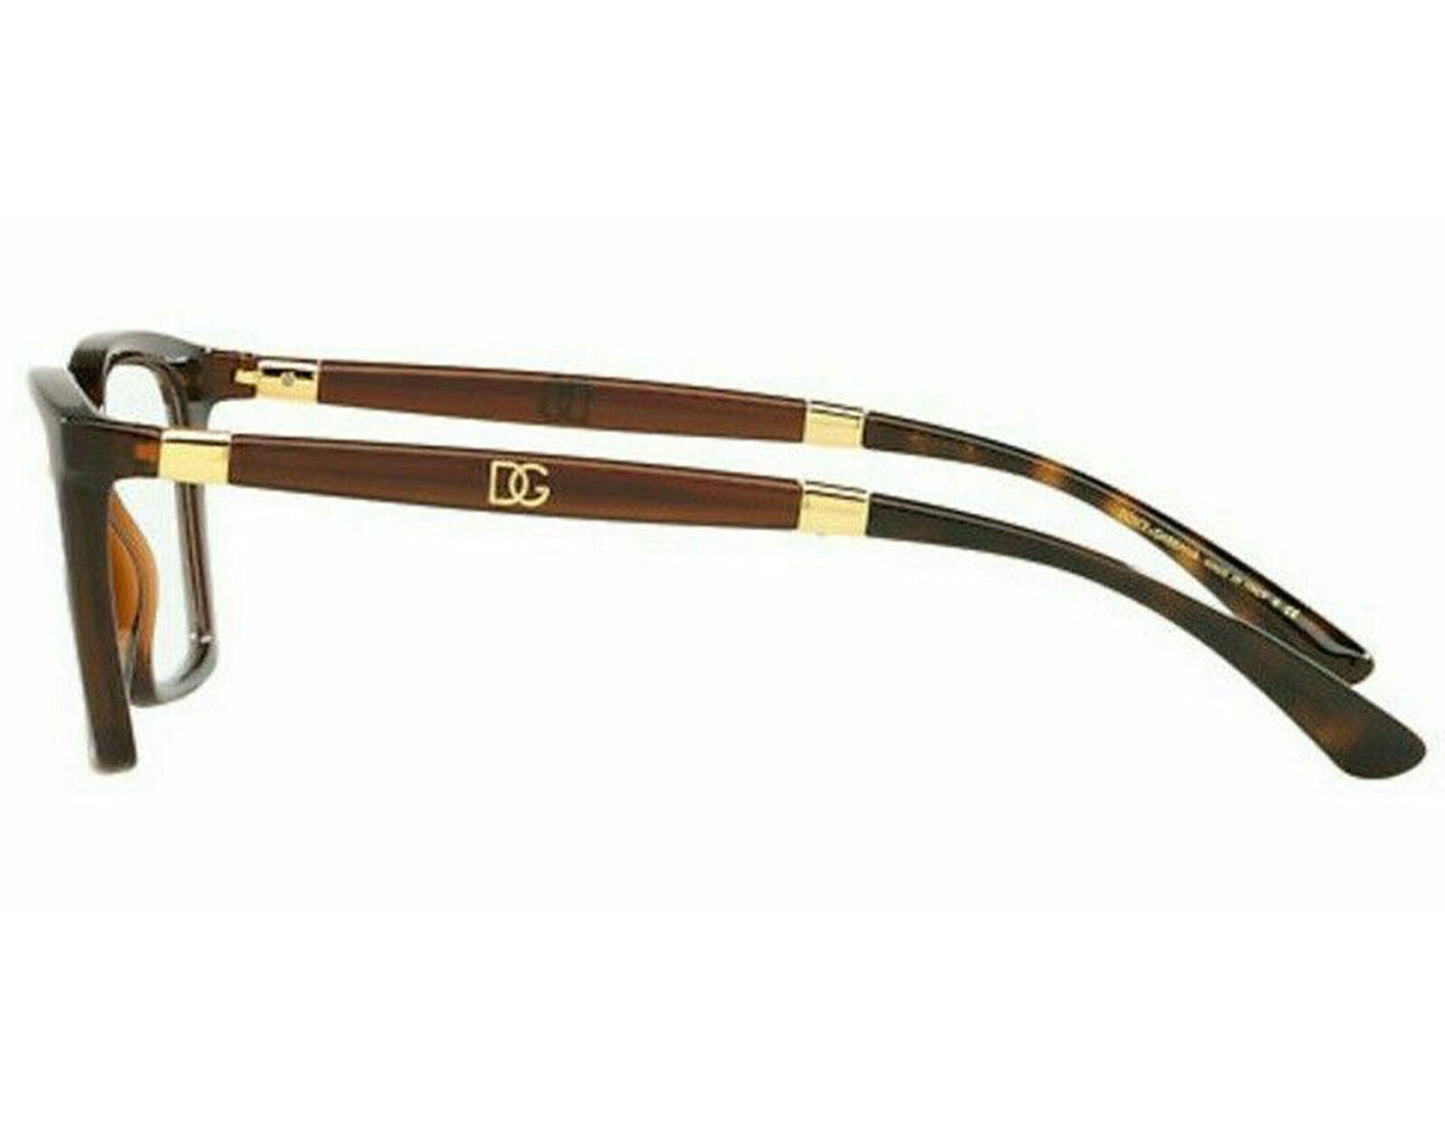 Dolce & Gabbana DG-5081-3185-50 50mm New Eyeglasses